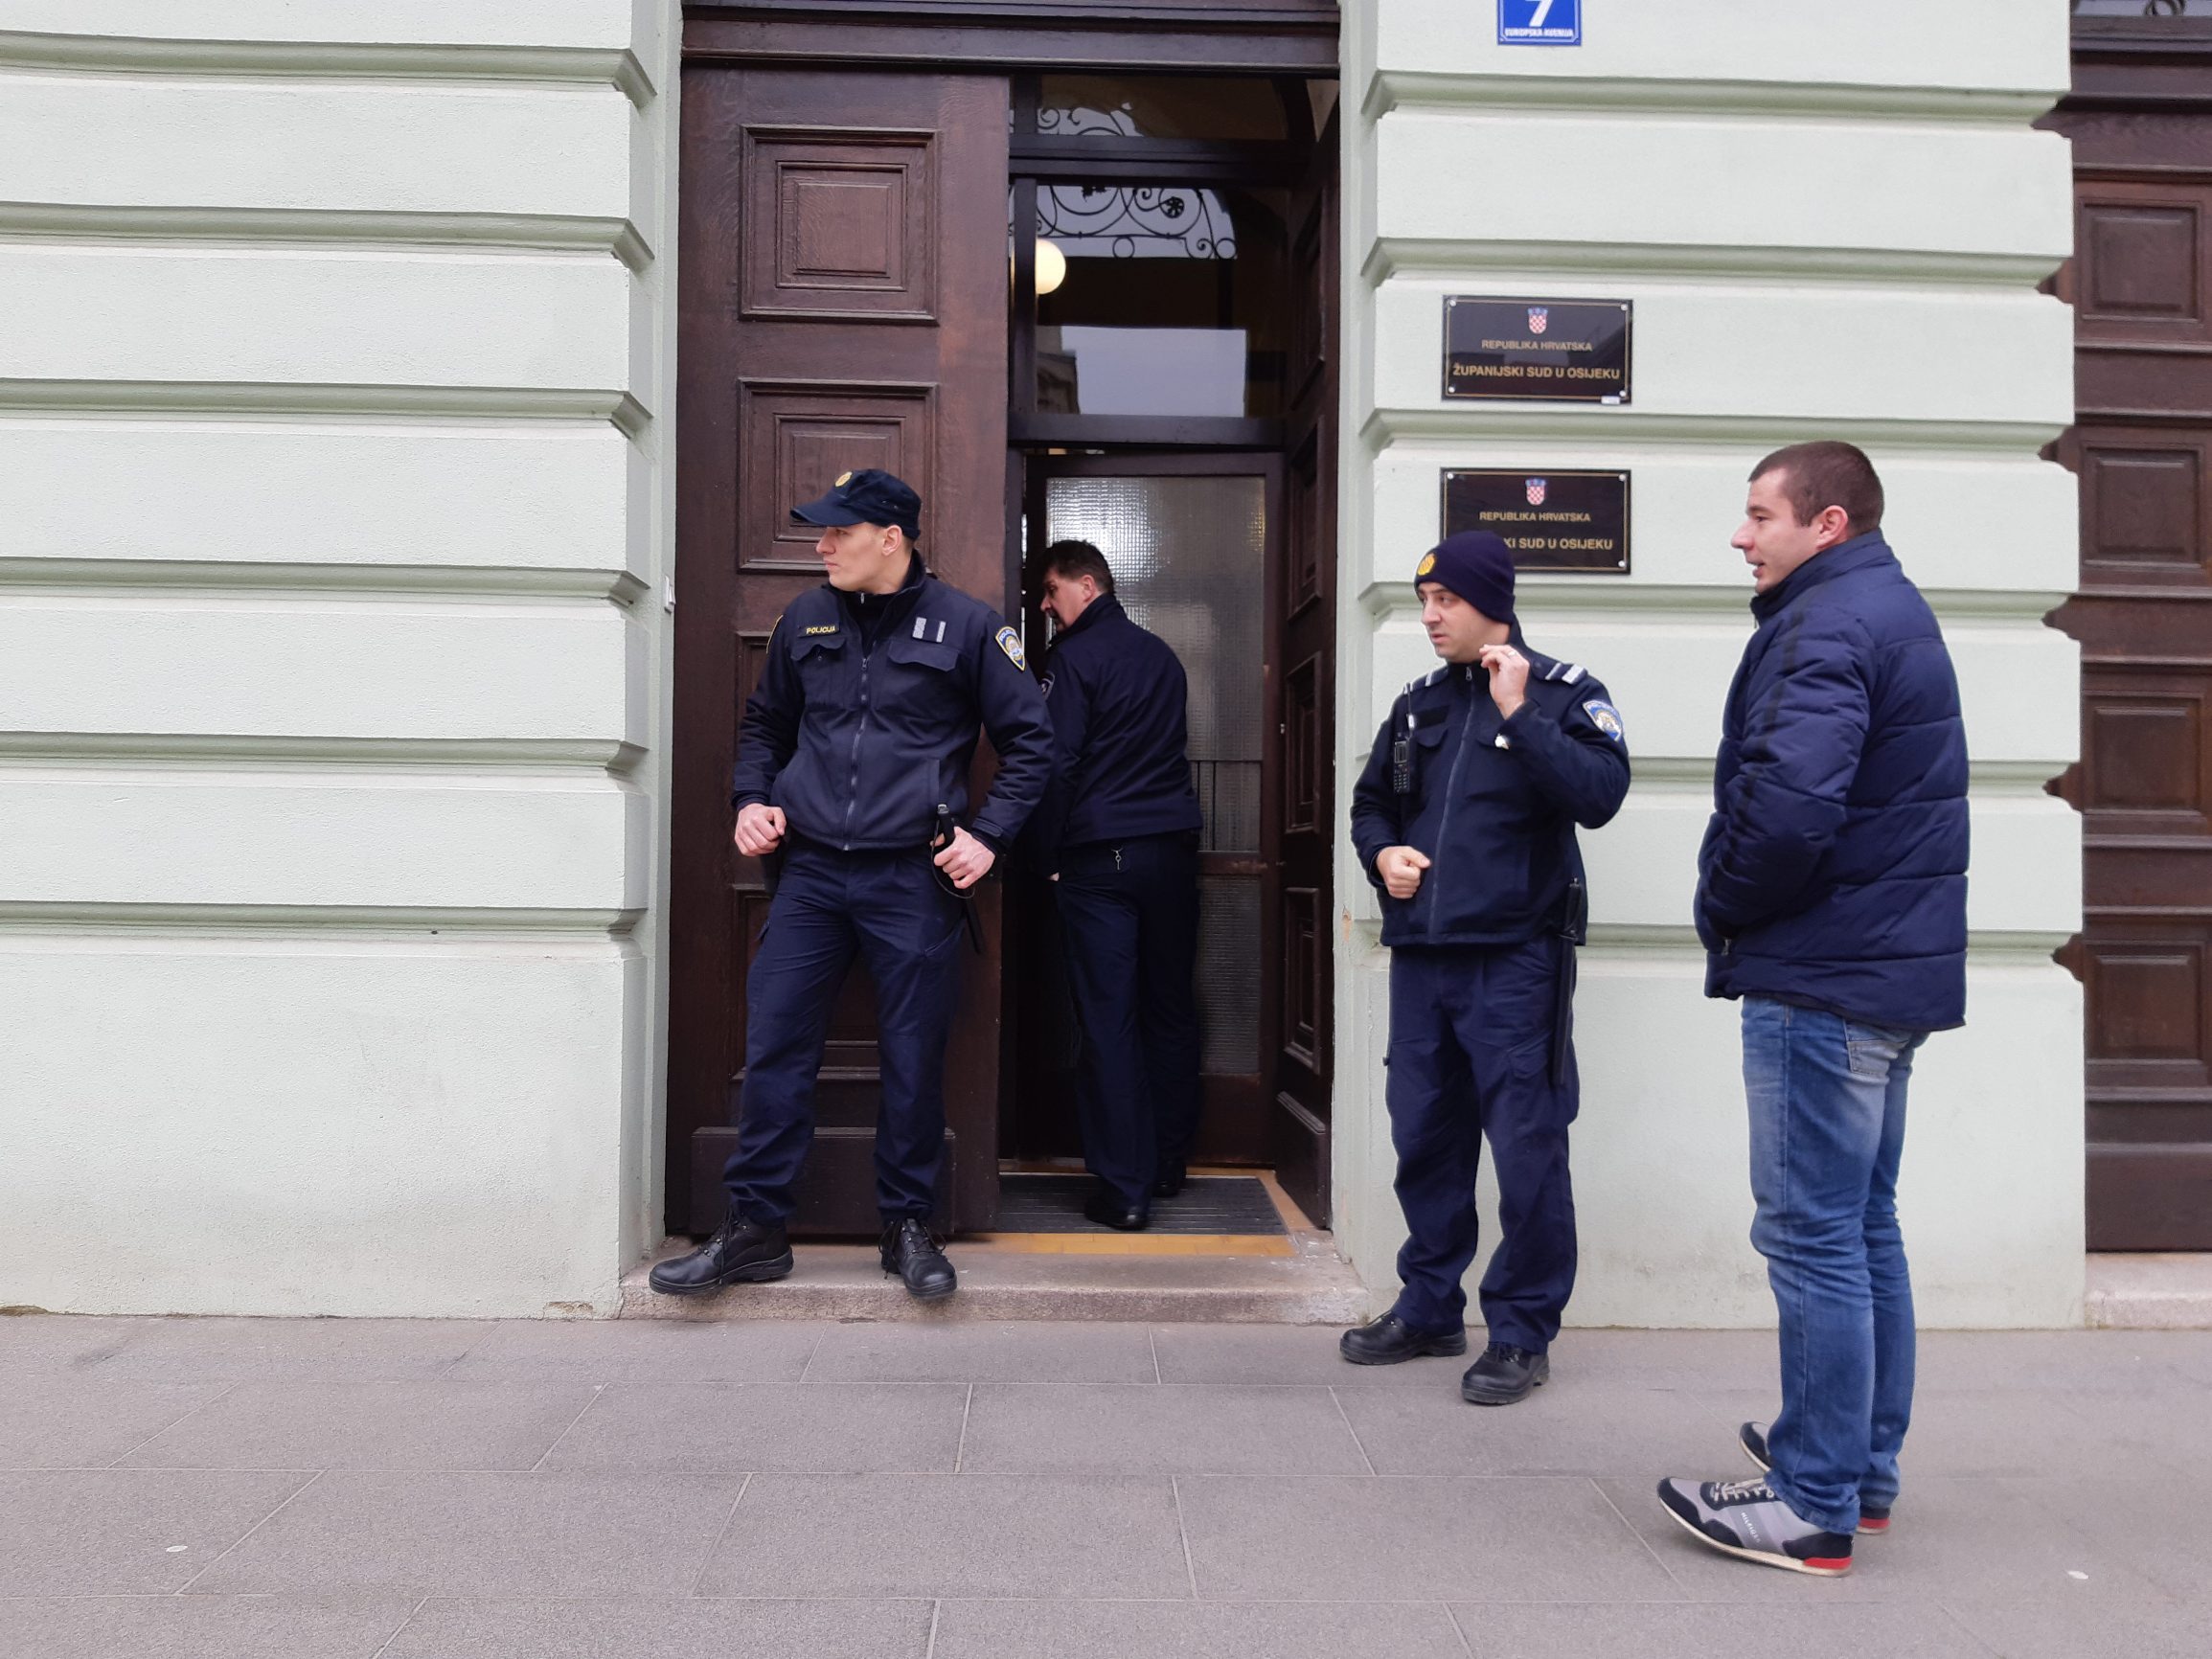 Osijek, 080120.
Zupanijski sud.
Zbog dojave o podmetnutoj bombi, jutros oko 10 sati ispraznjena je zgrada Zupanijskog suda u Osijeku.
Foto: Vlado Kos / CROPIX